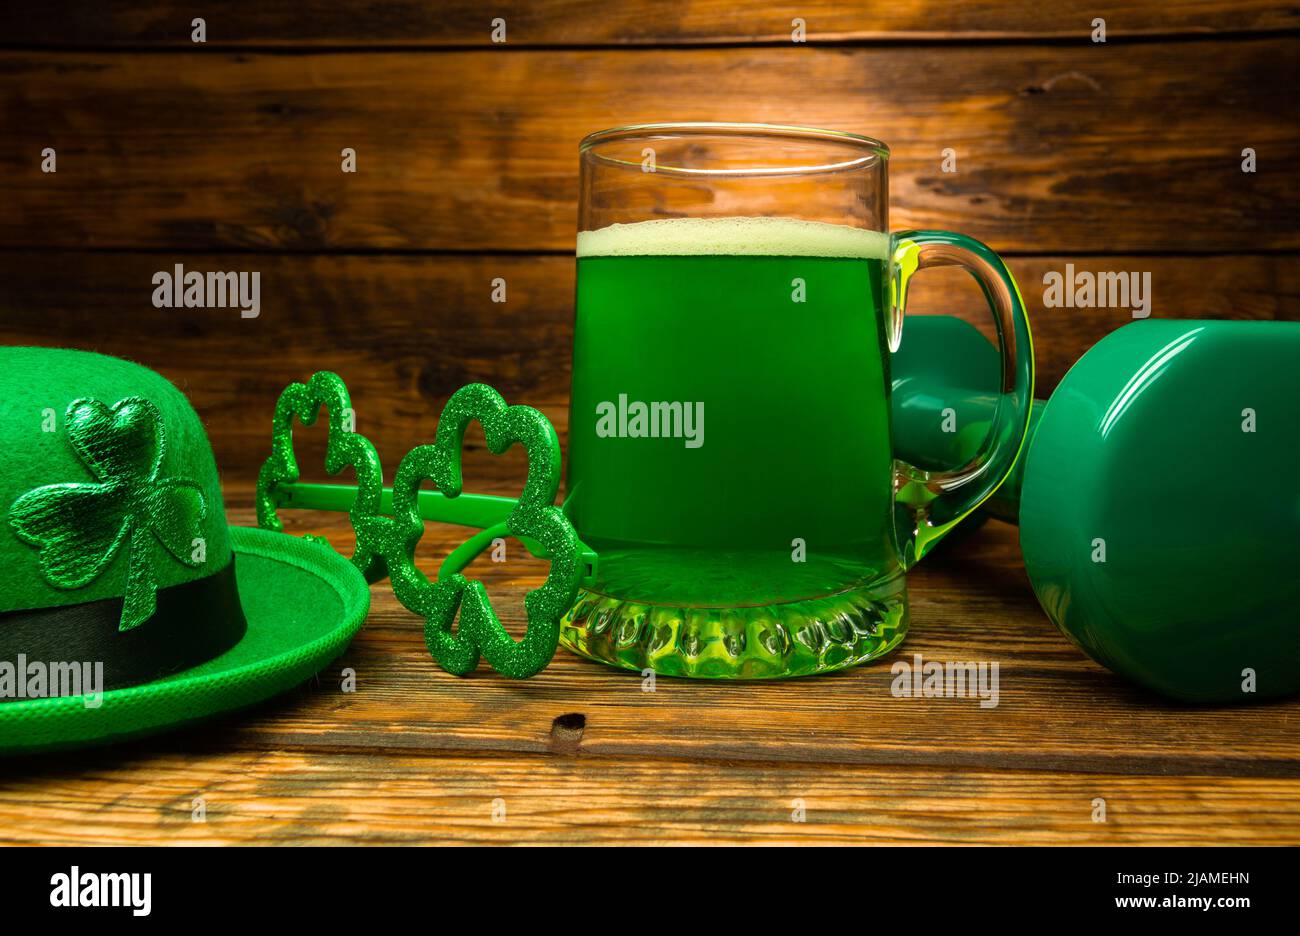 Schwere Hantel, Glas grünes Bier, irischer Hut mit Blattklee, schamsteinförmige Gläser. Gesundes Fitness-Studio-Kompositionskonzept für den St. Patrick's Day Stockfoto